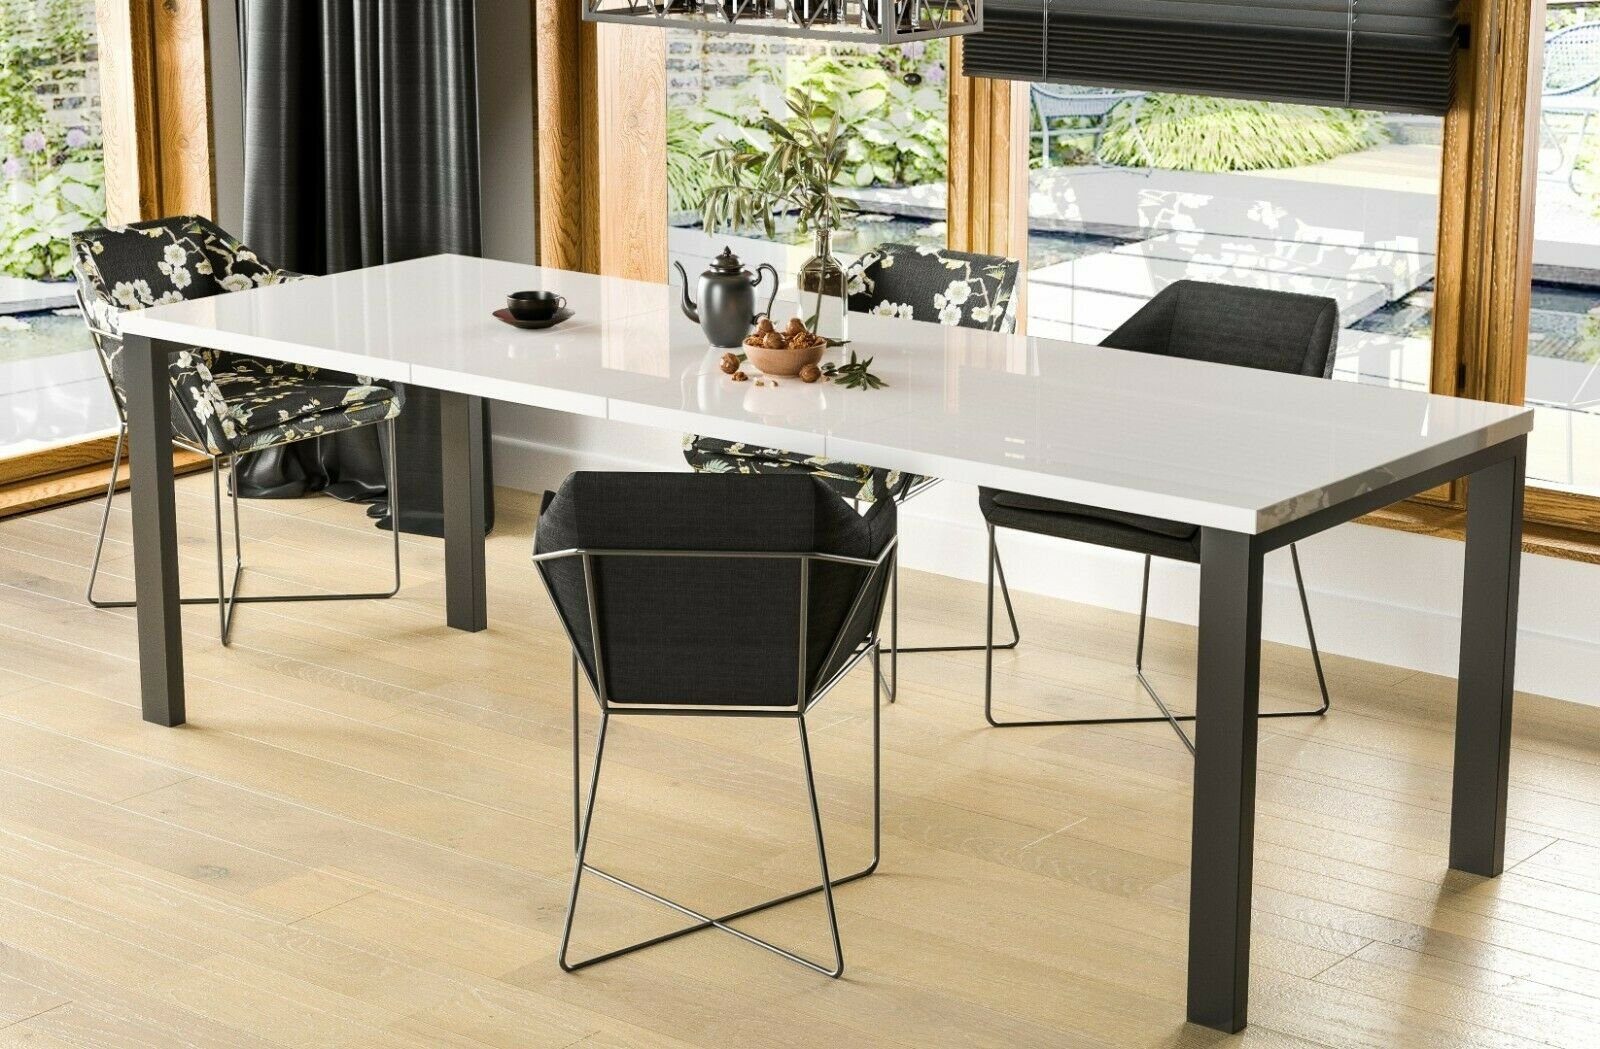 Endo-Moebel Kulissen-Esstisch Garant 80-215cm ausziehbar erweiterbar Metallgestell Küchentisch, 45cm Erweiterungsplatten, Synchronauszug, von 0,8m auf 2,15m